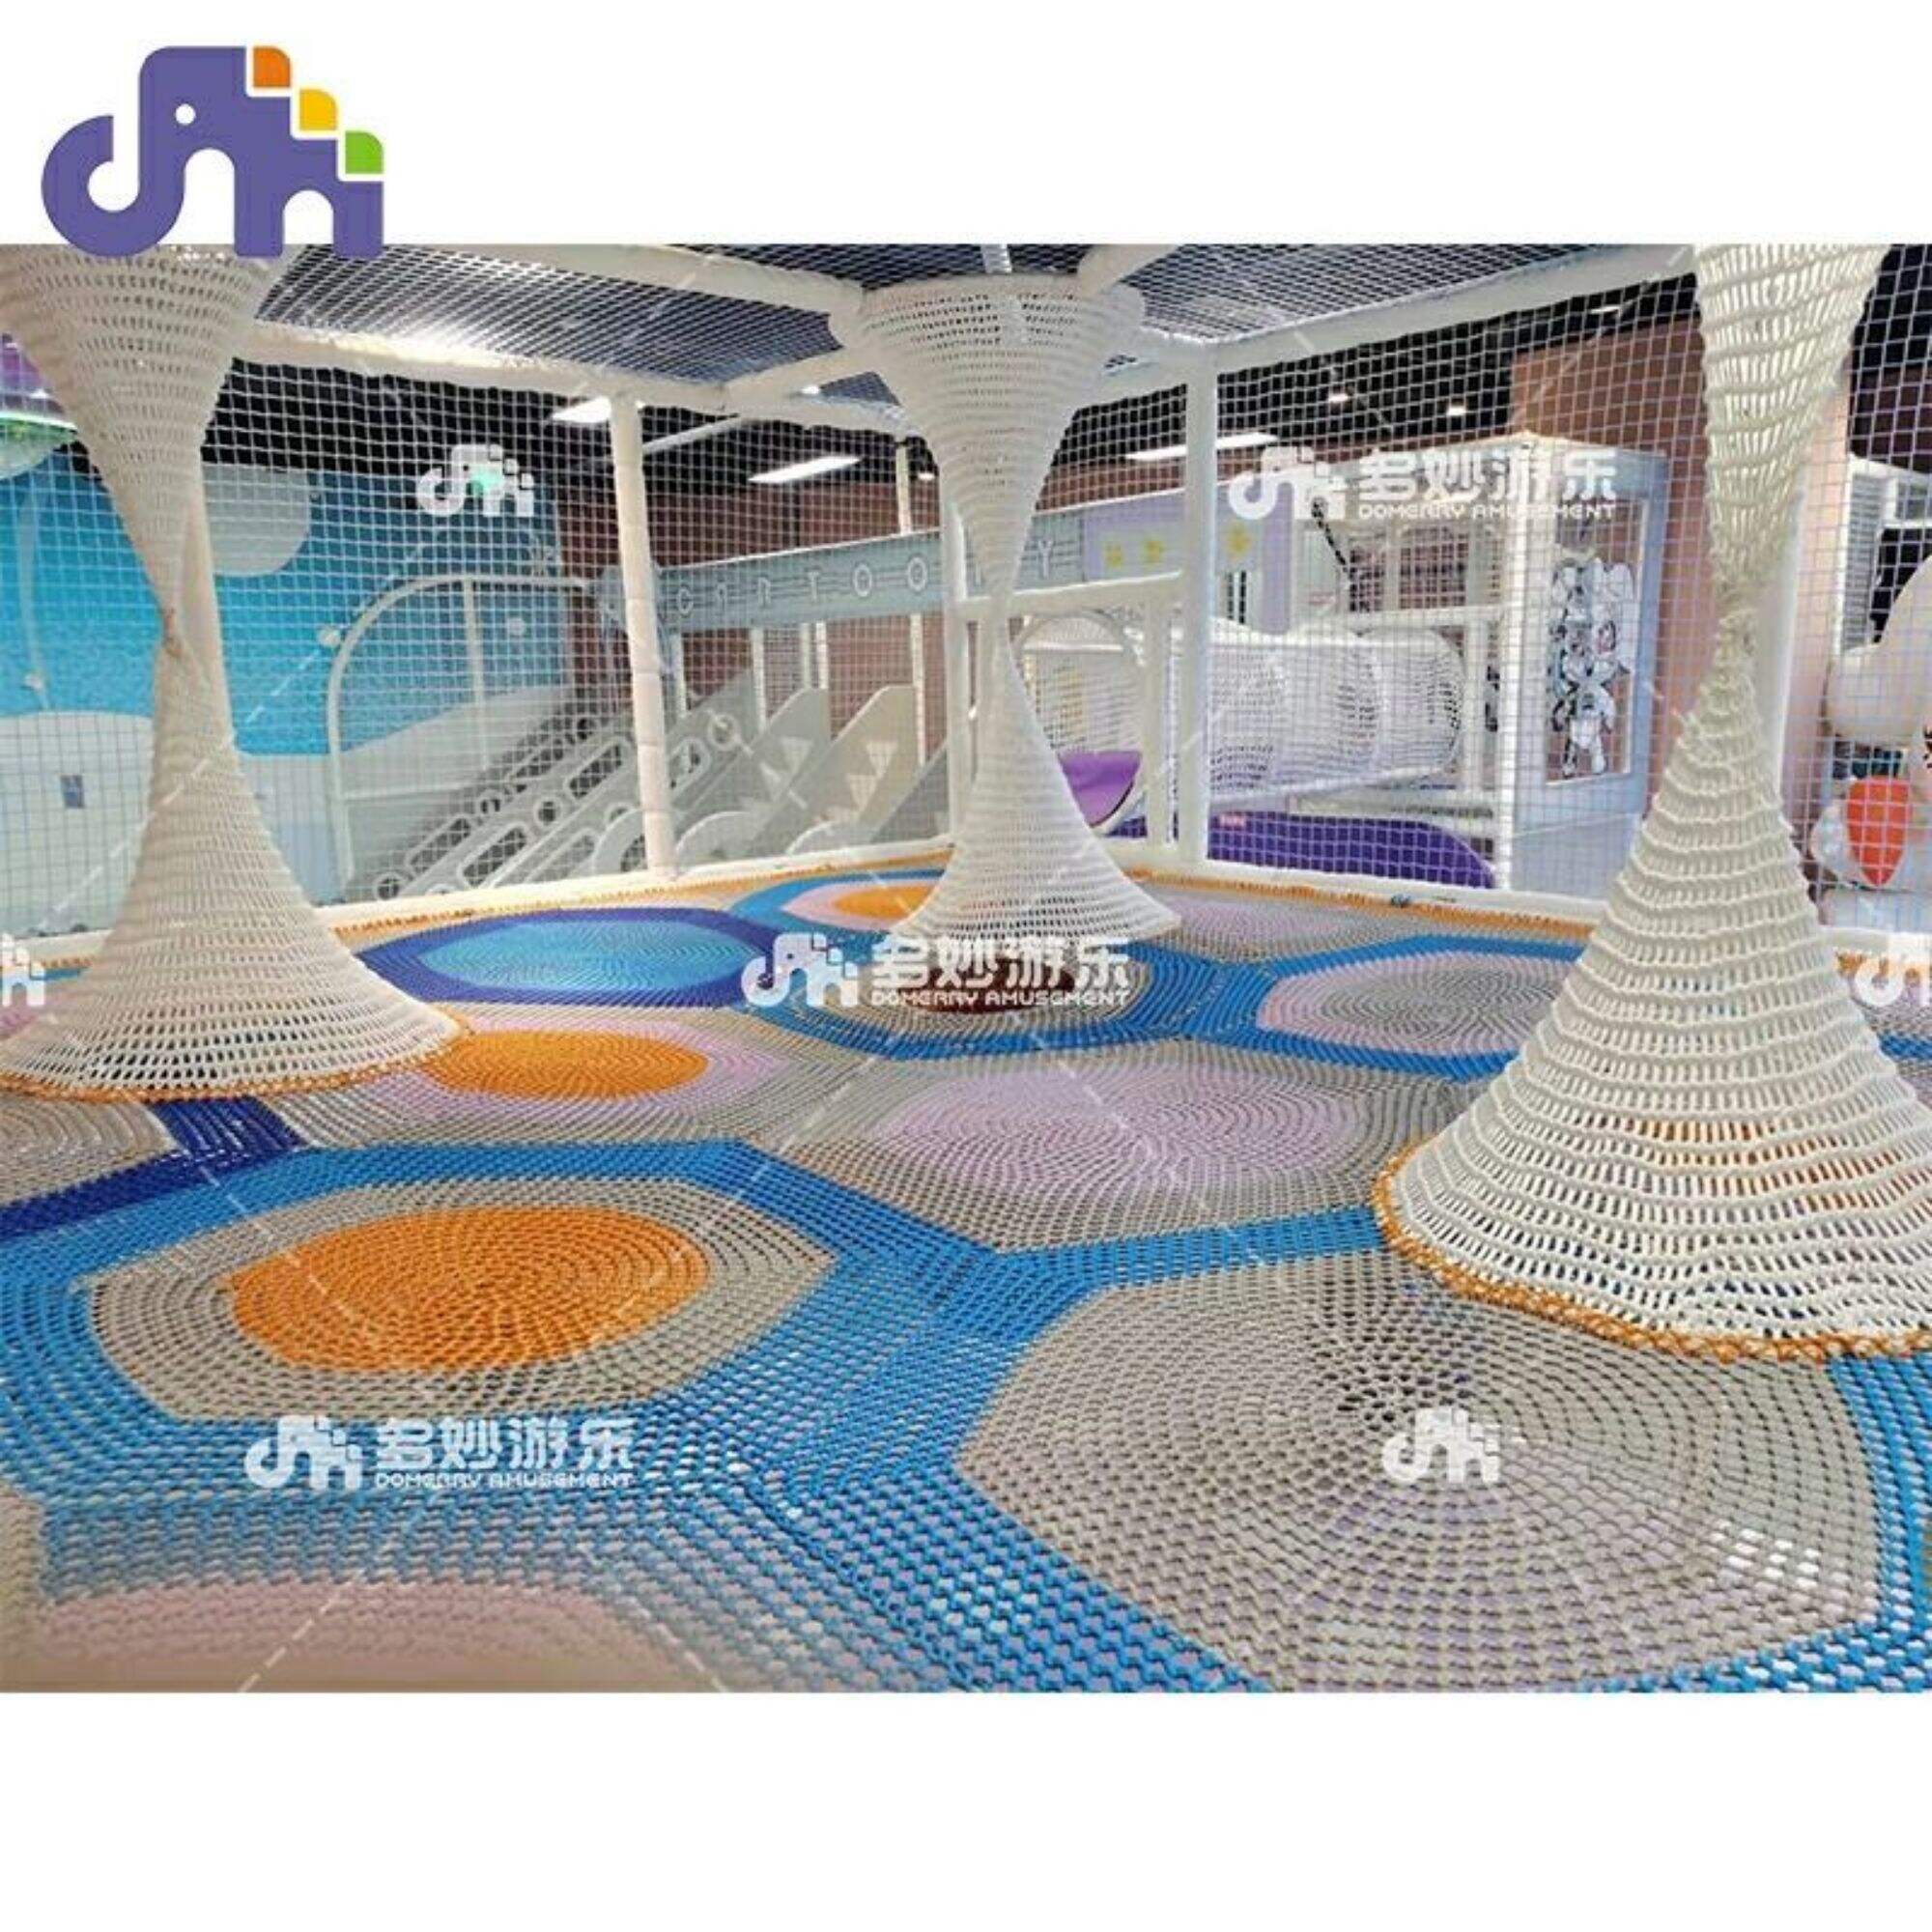 Attrezzatura da palestra commerciale per bambini Reti in nylon morbido per parco divertimenti Parco giochi Jungle Gym con materiale resistente e morbido